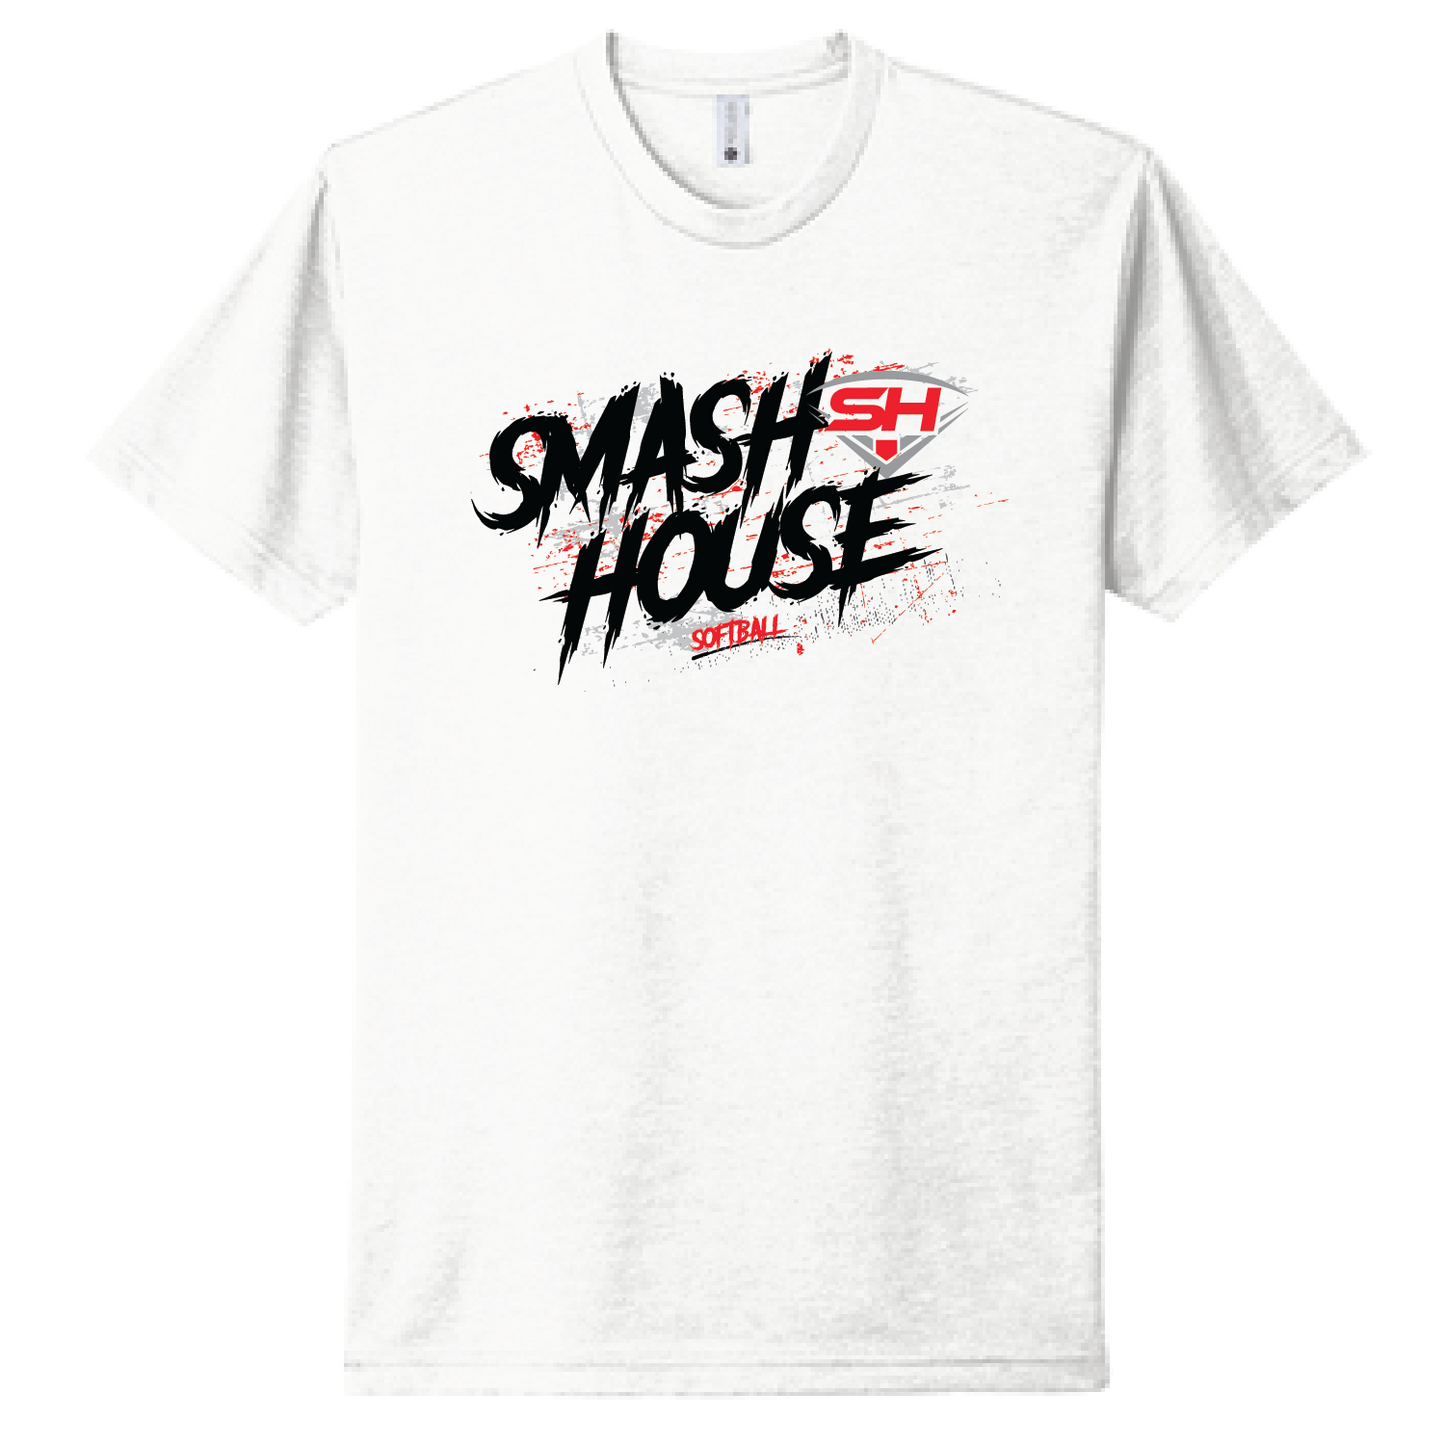 Smash House Xtreme Unisex Tee